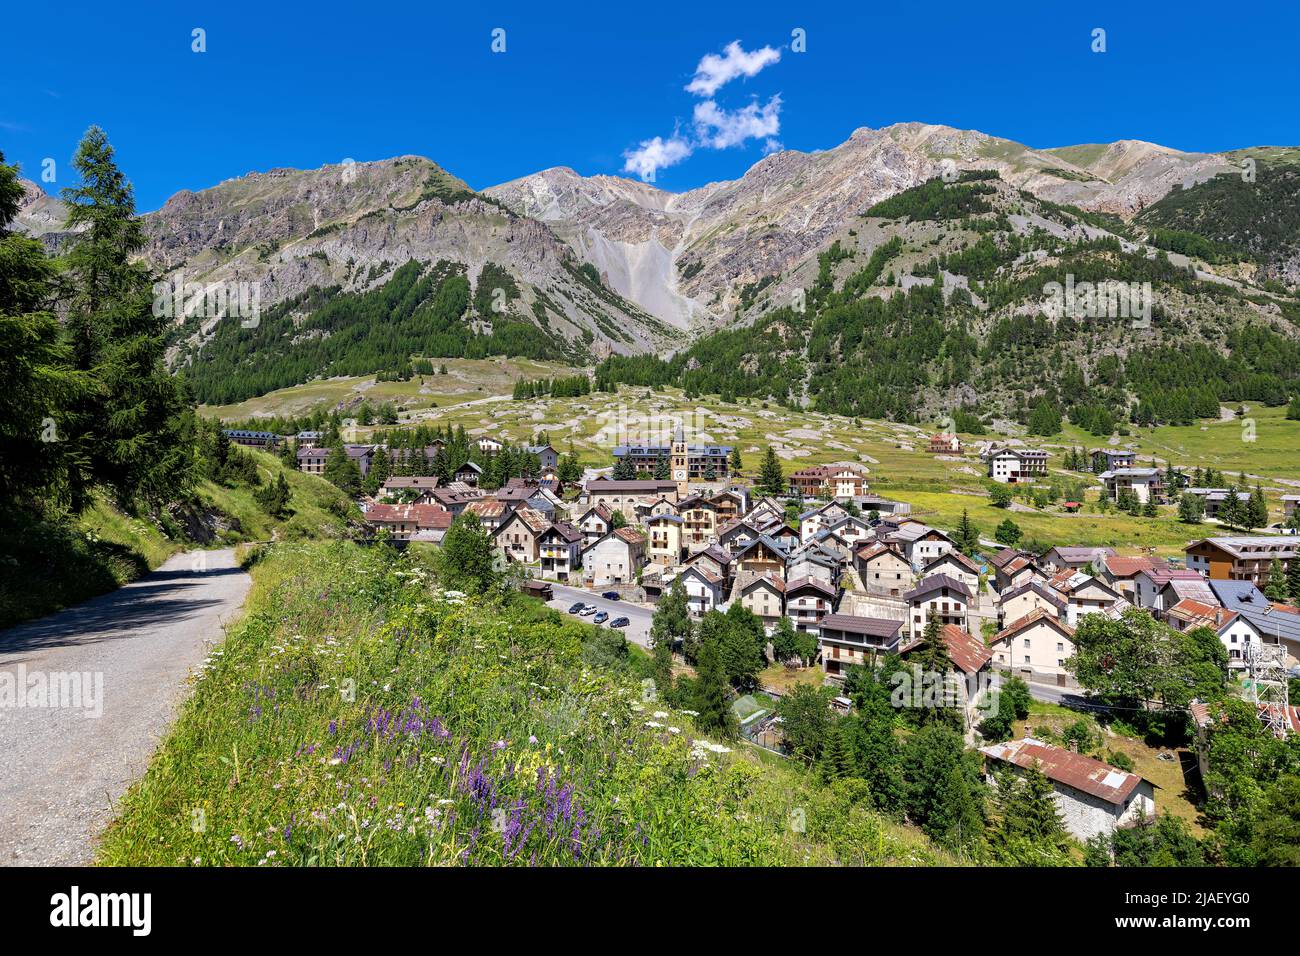 Ländliche Straße und kleine alpine Stadt Bersezio auf dem grünen Tal zwischen Bergen unter blauem Himmel in Piemont, Norditalien. Stockfoto